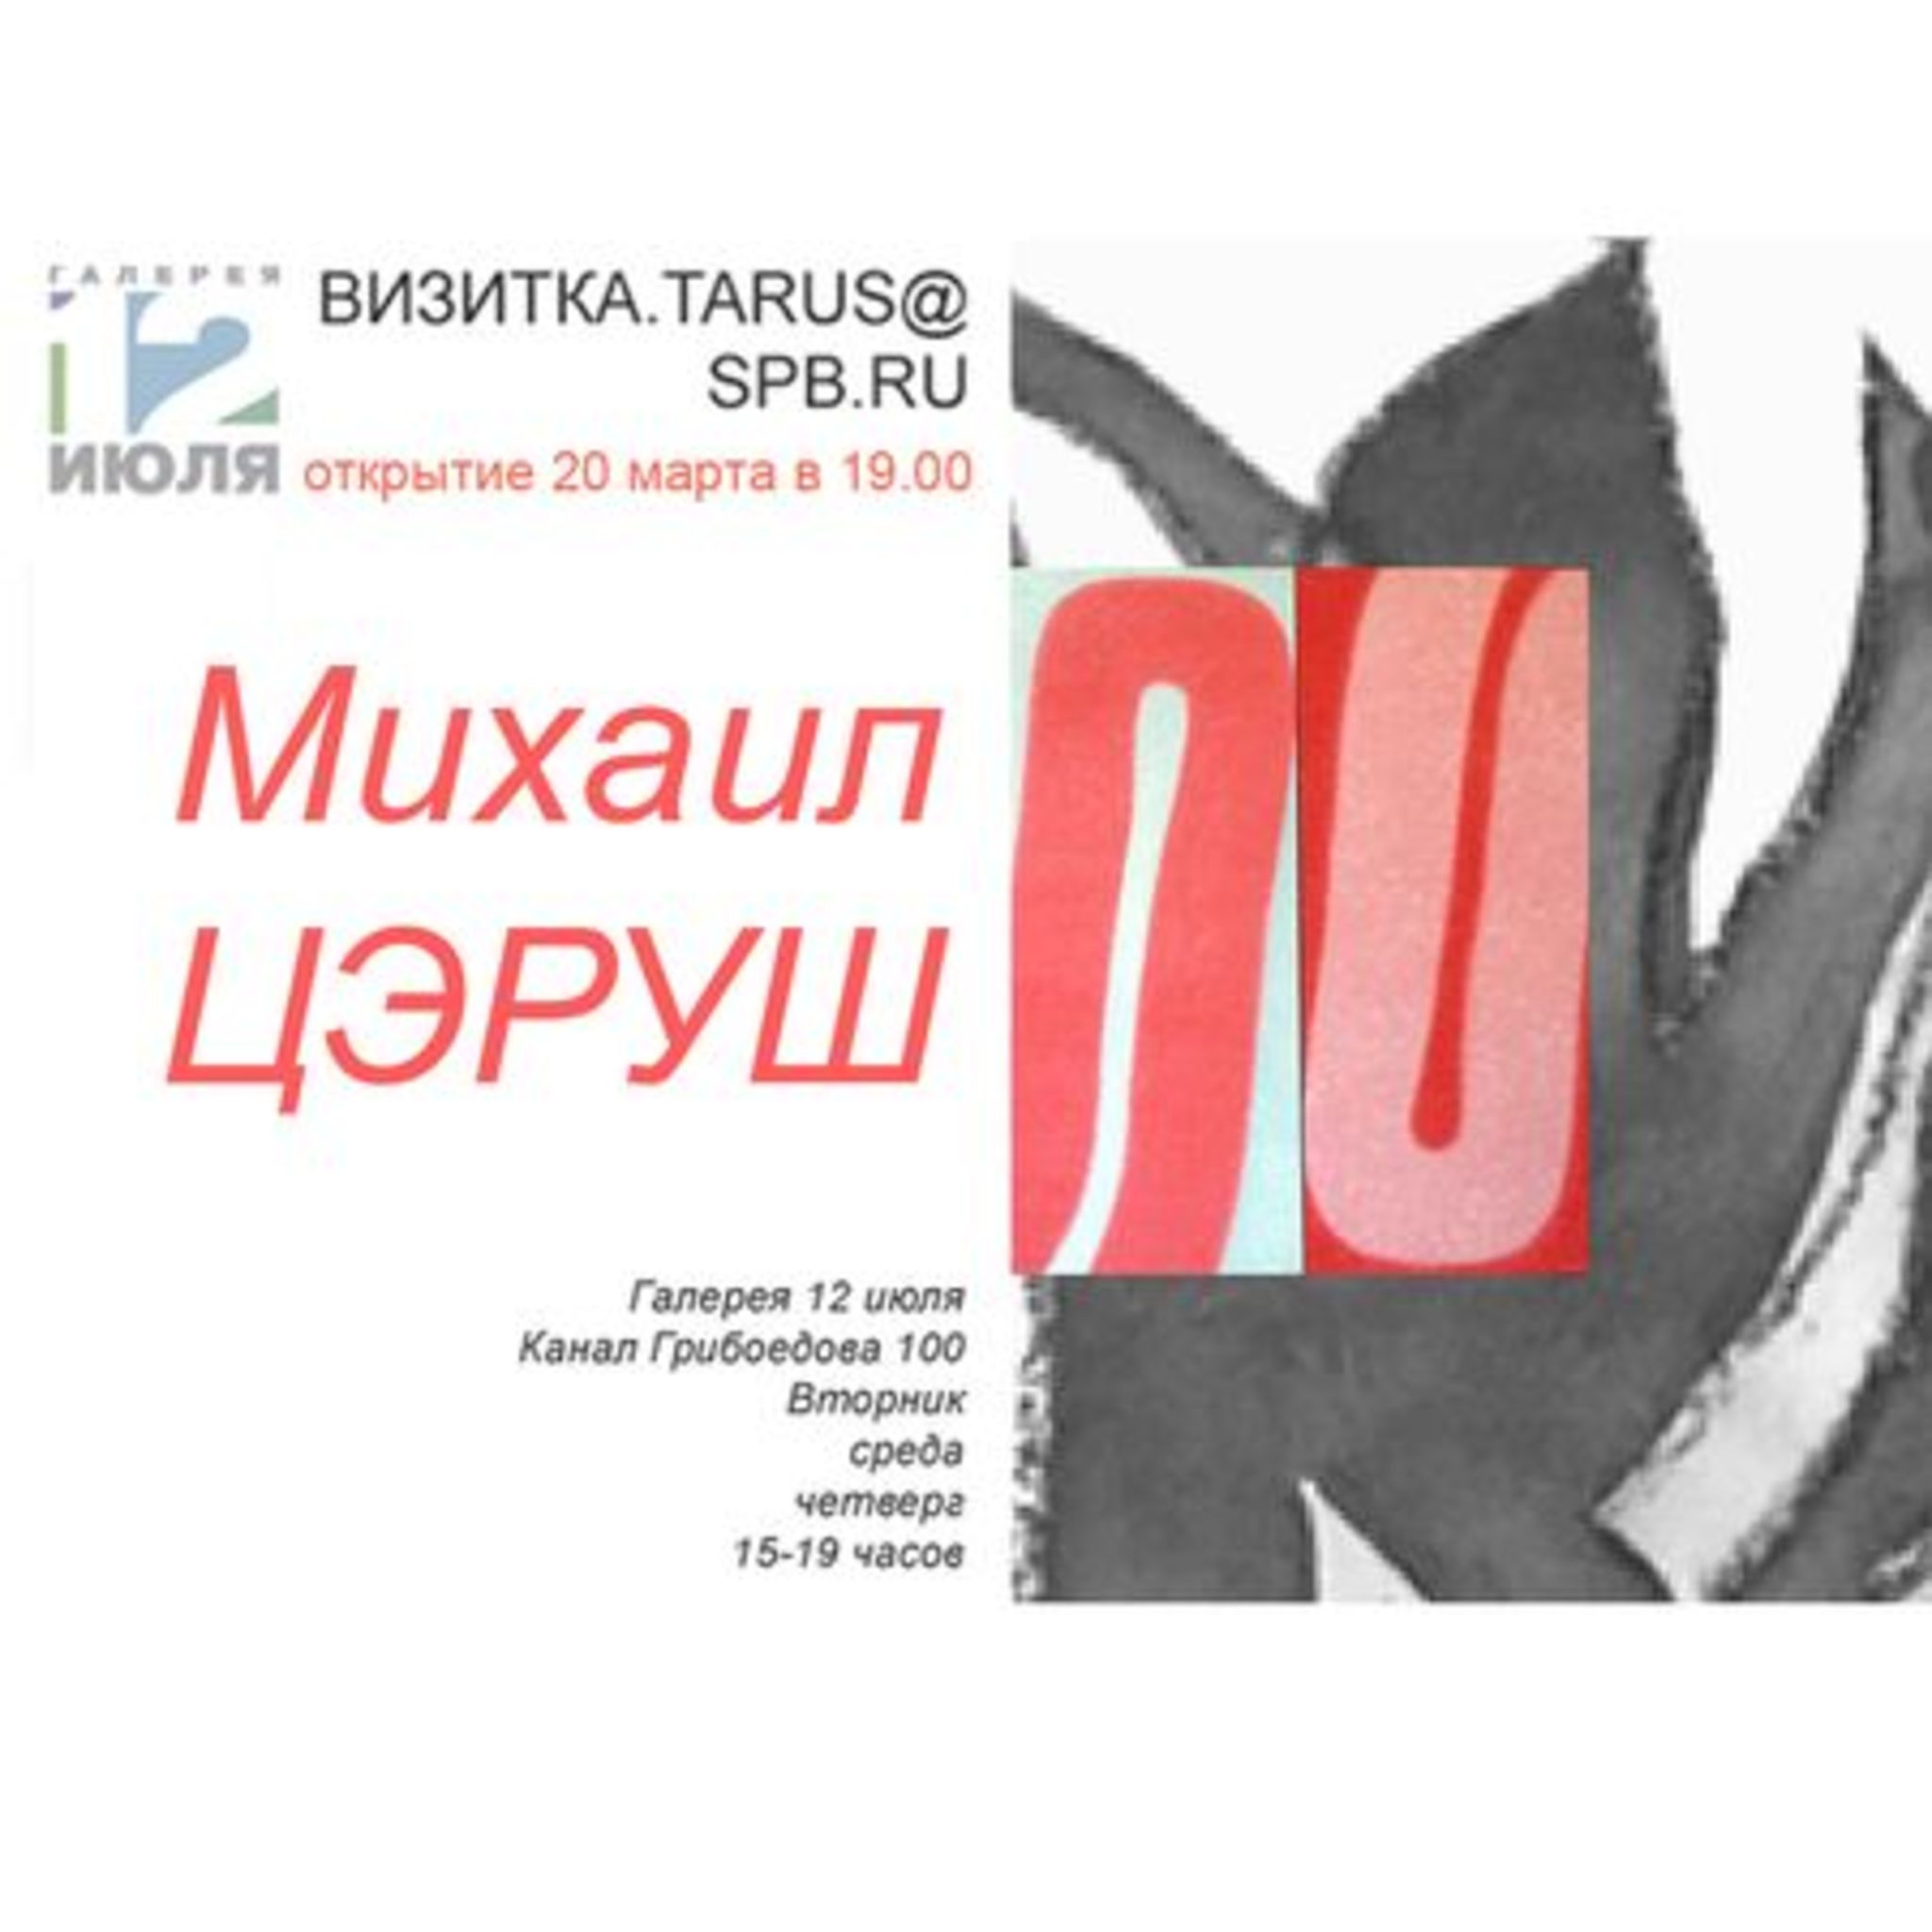 Exhibition of Michael Tserush Business card. TARUS@SPB.RU